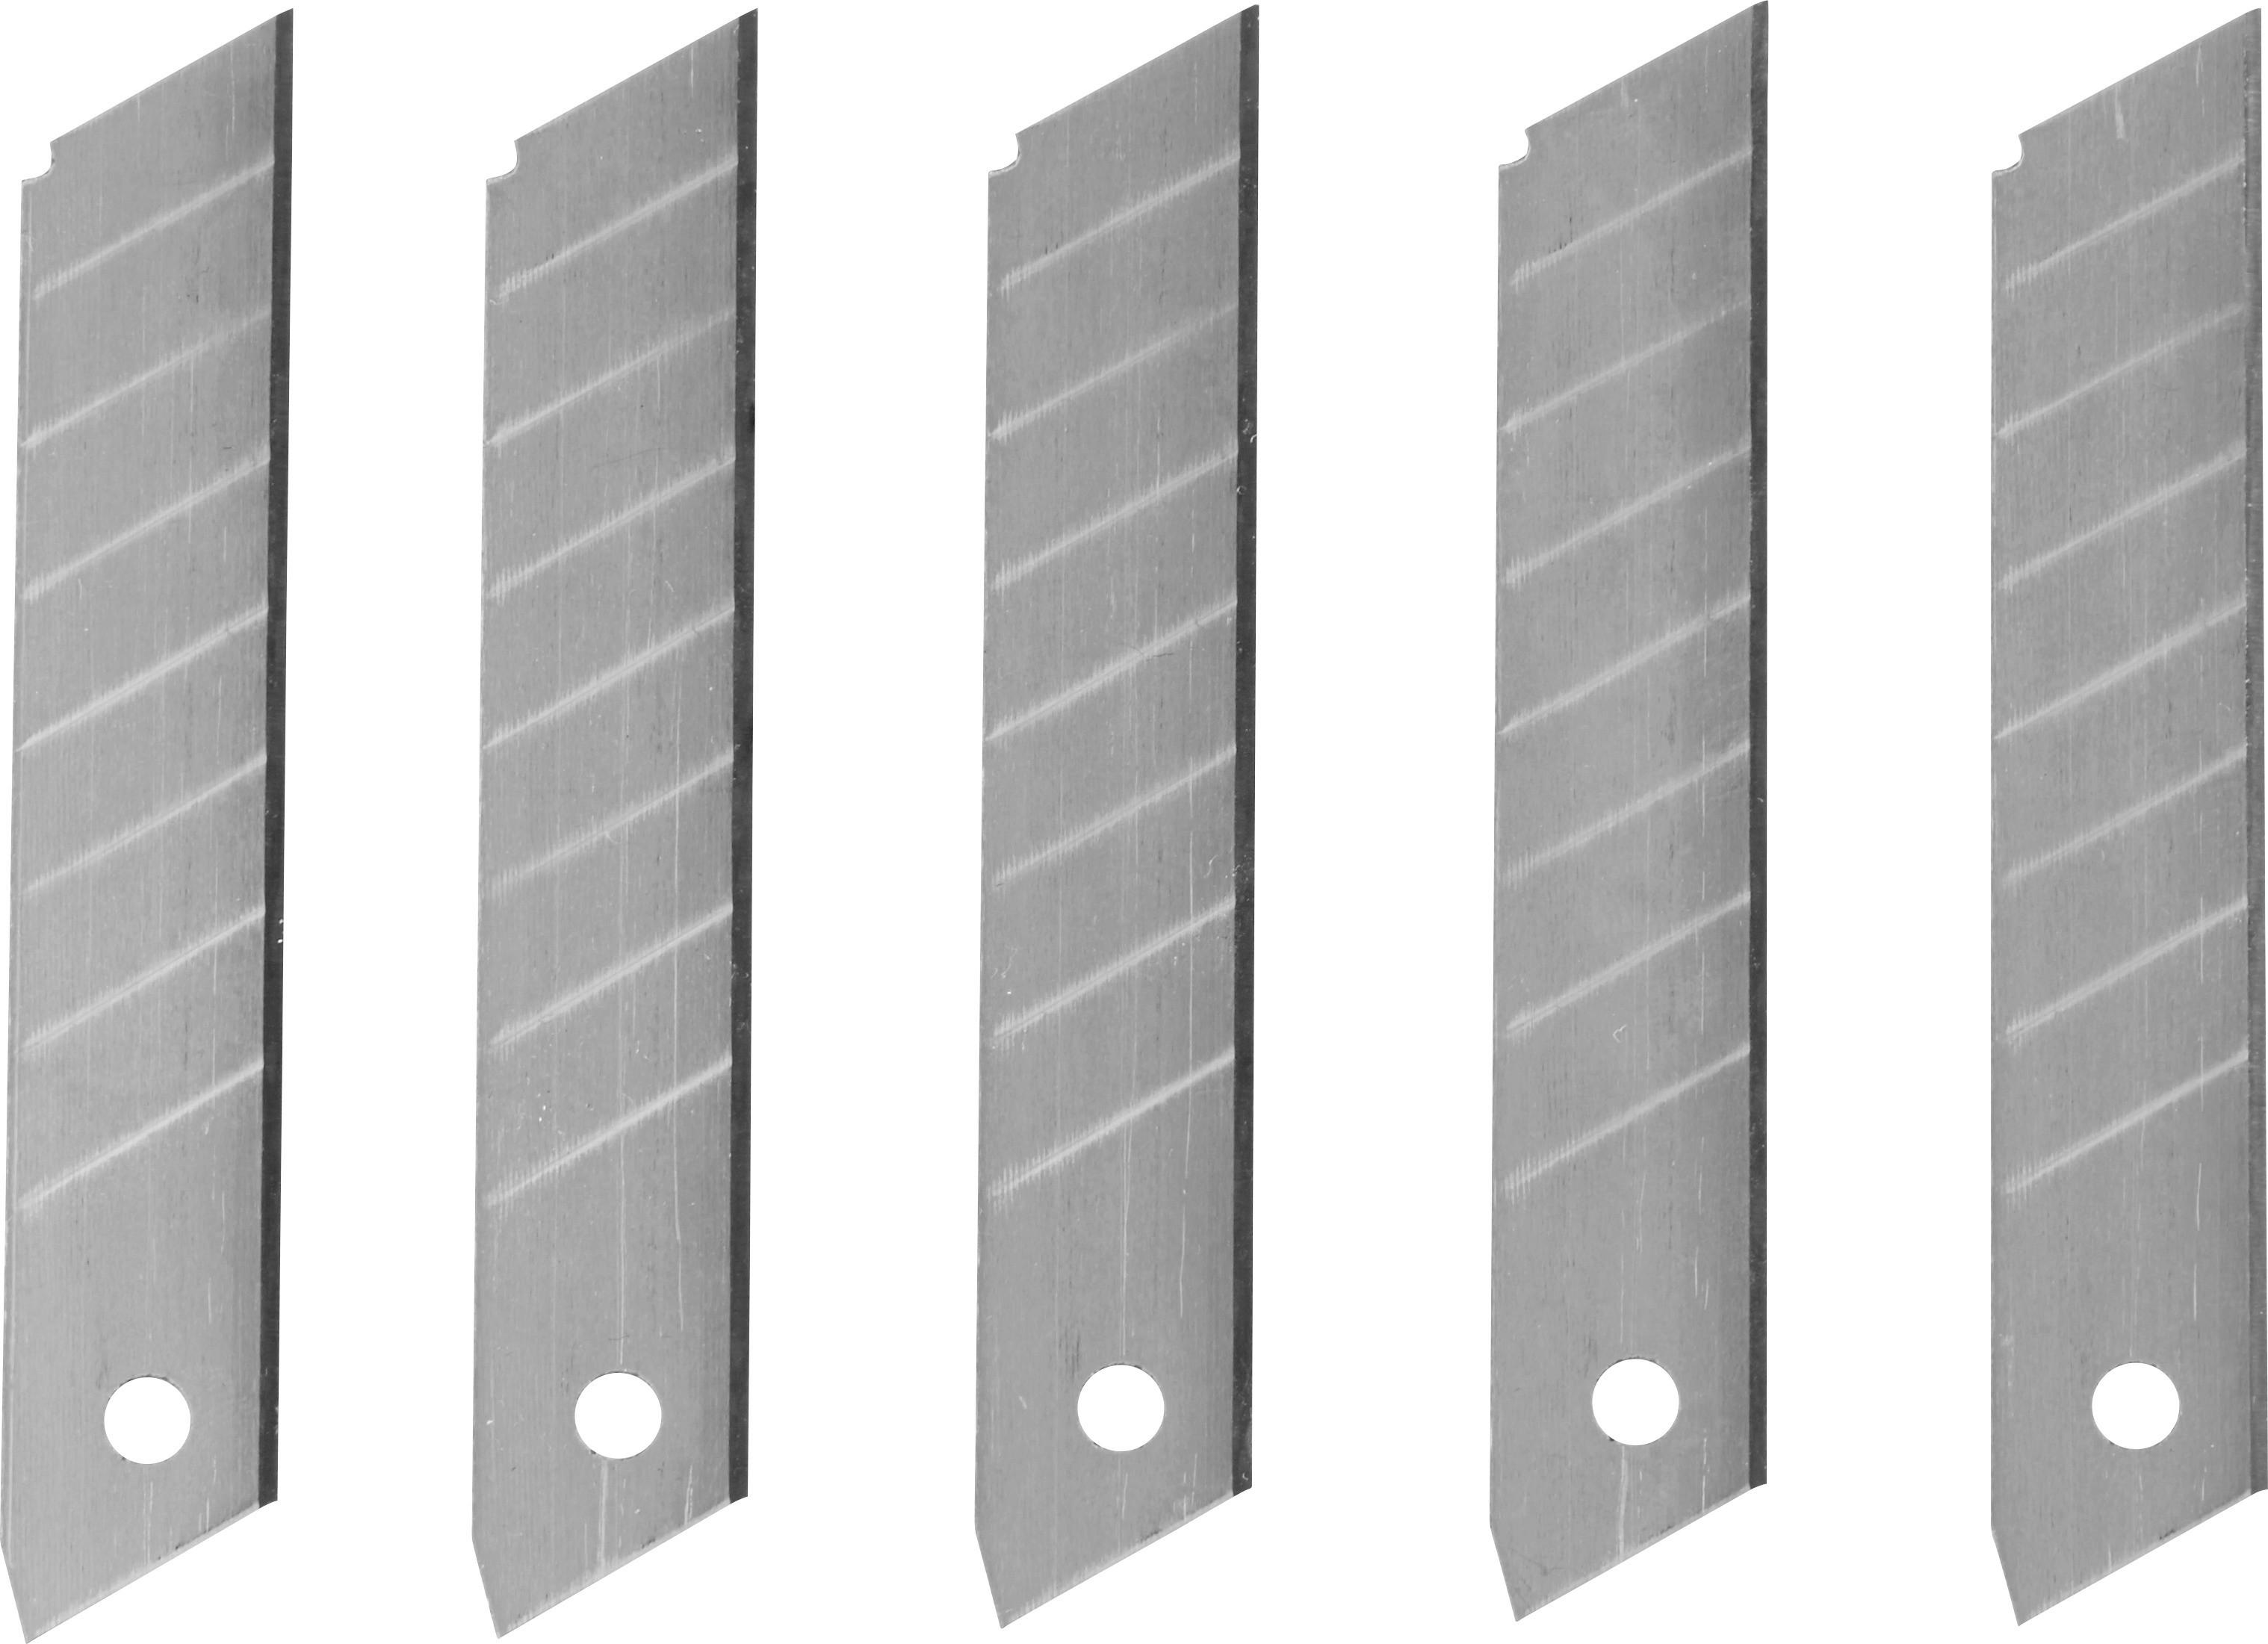 Ersatzklingen-Set 5 Stk. B: 18 mm für Cuttermesser - KONVENTIONELL, Metall (1,8cm)